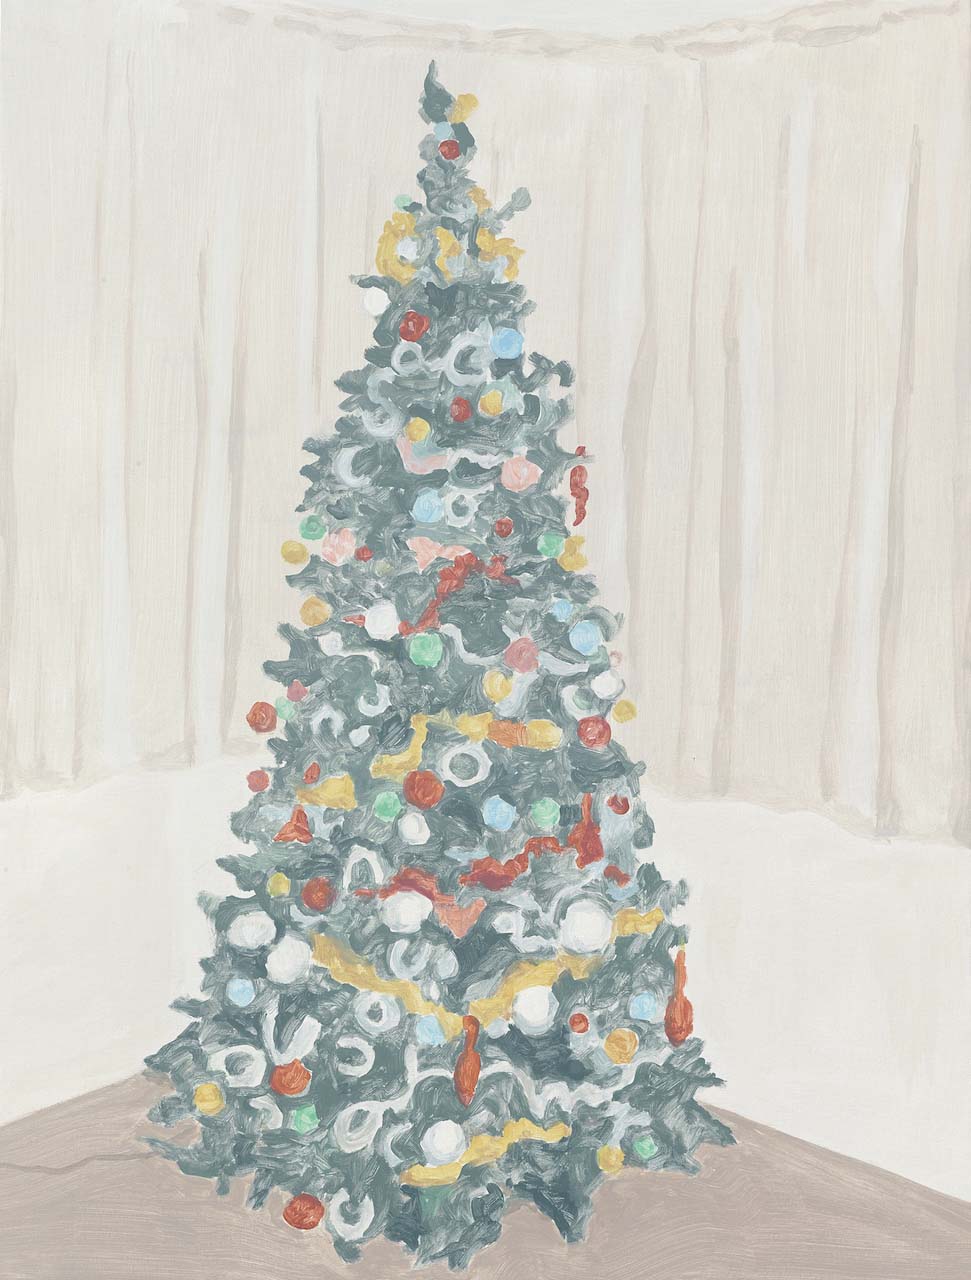  Xmas Tree 2, acrylic on canvas, 32 x 24.25 inches, 2014. 